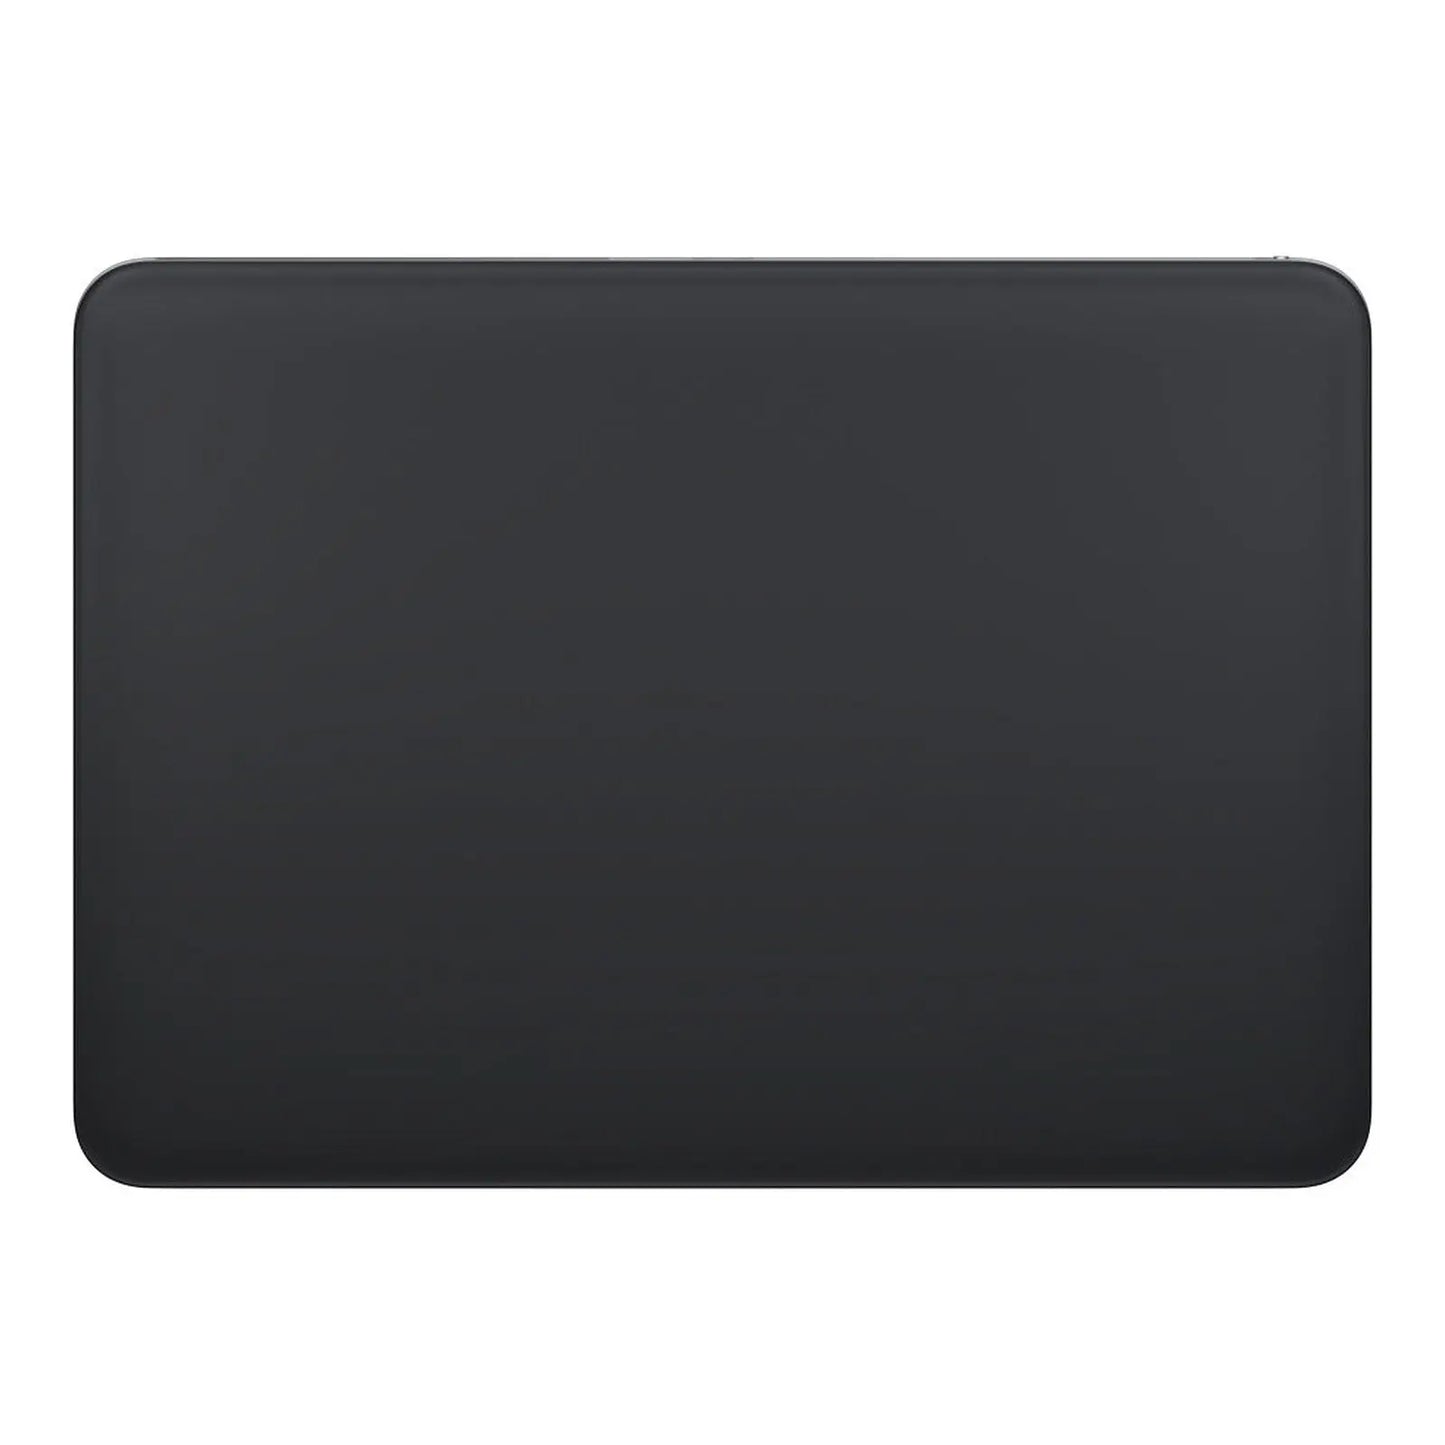 Pavé tactile Apple Magic Trackpad Noir 0194252840351 APPLE